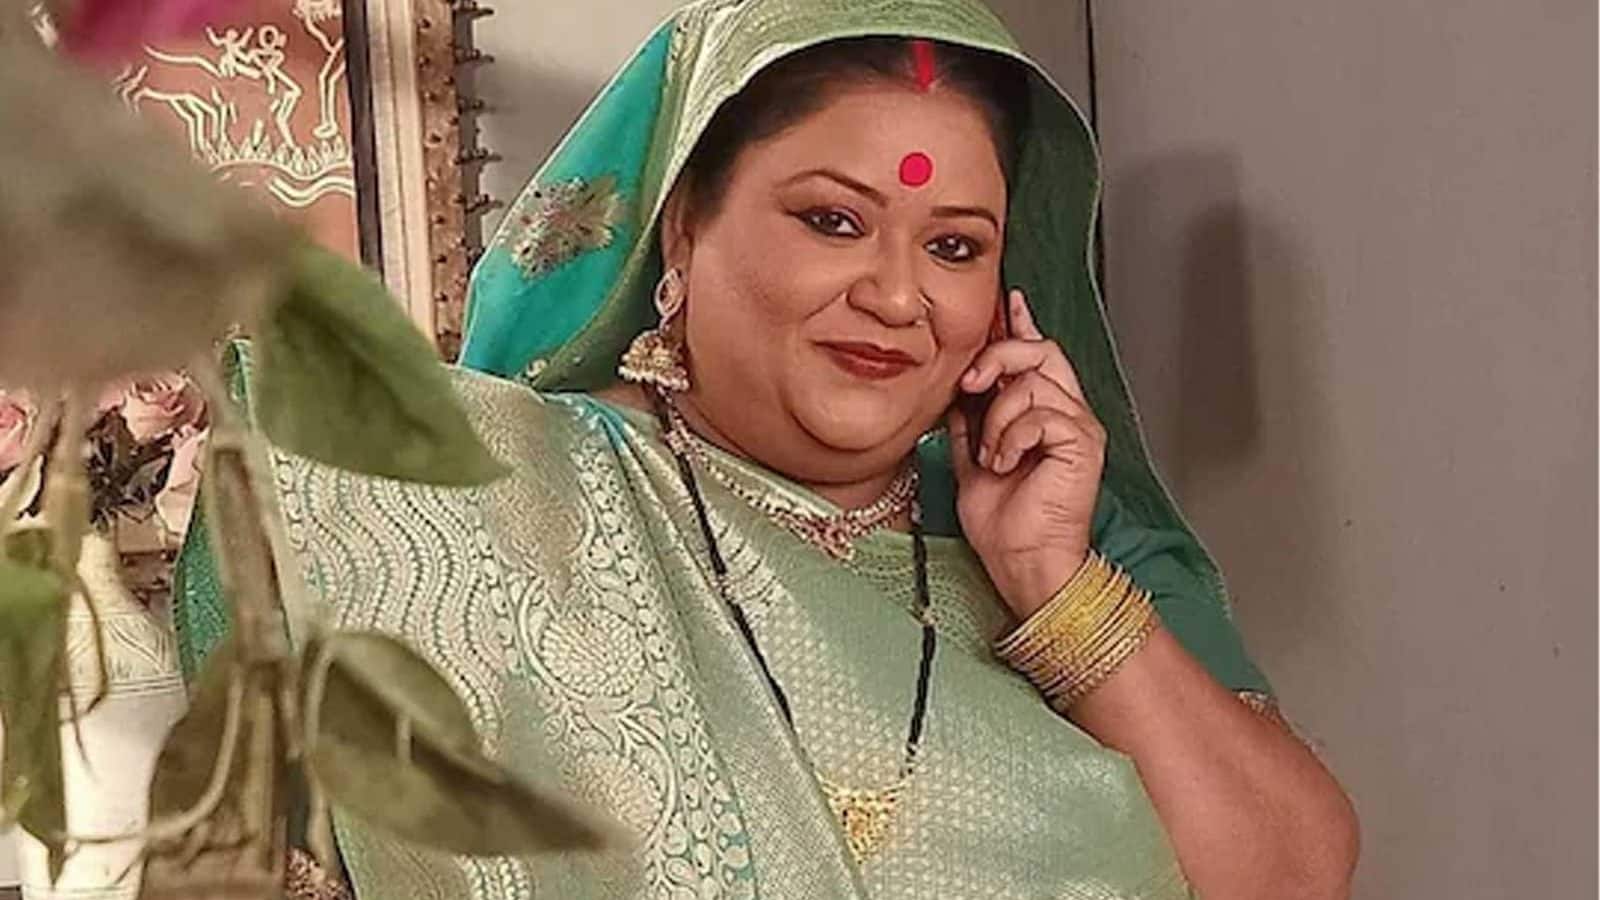 Bhabiji Ghar Par Hain’s Amma ji Soma Rathod Gained Weight to Get Work in TV Serials